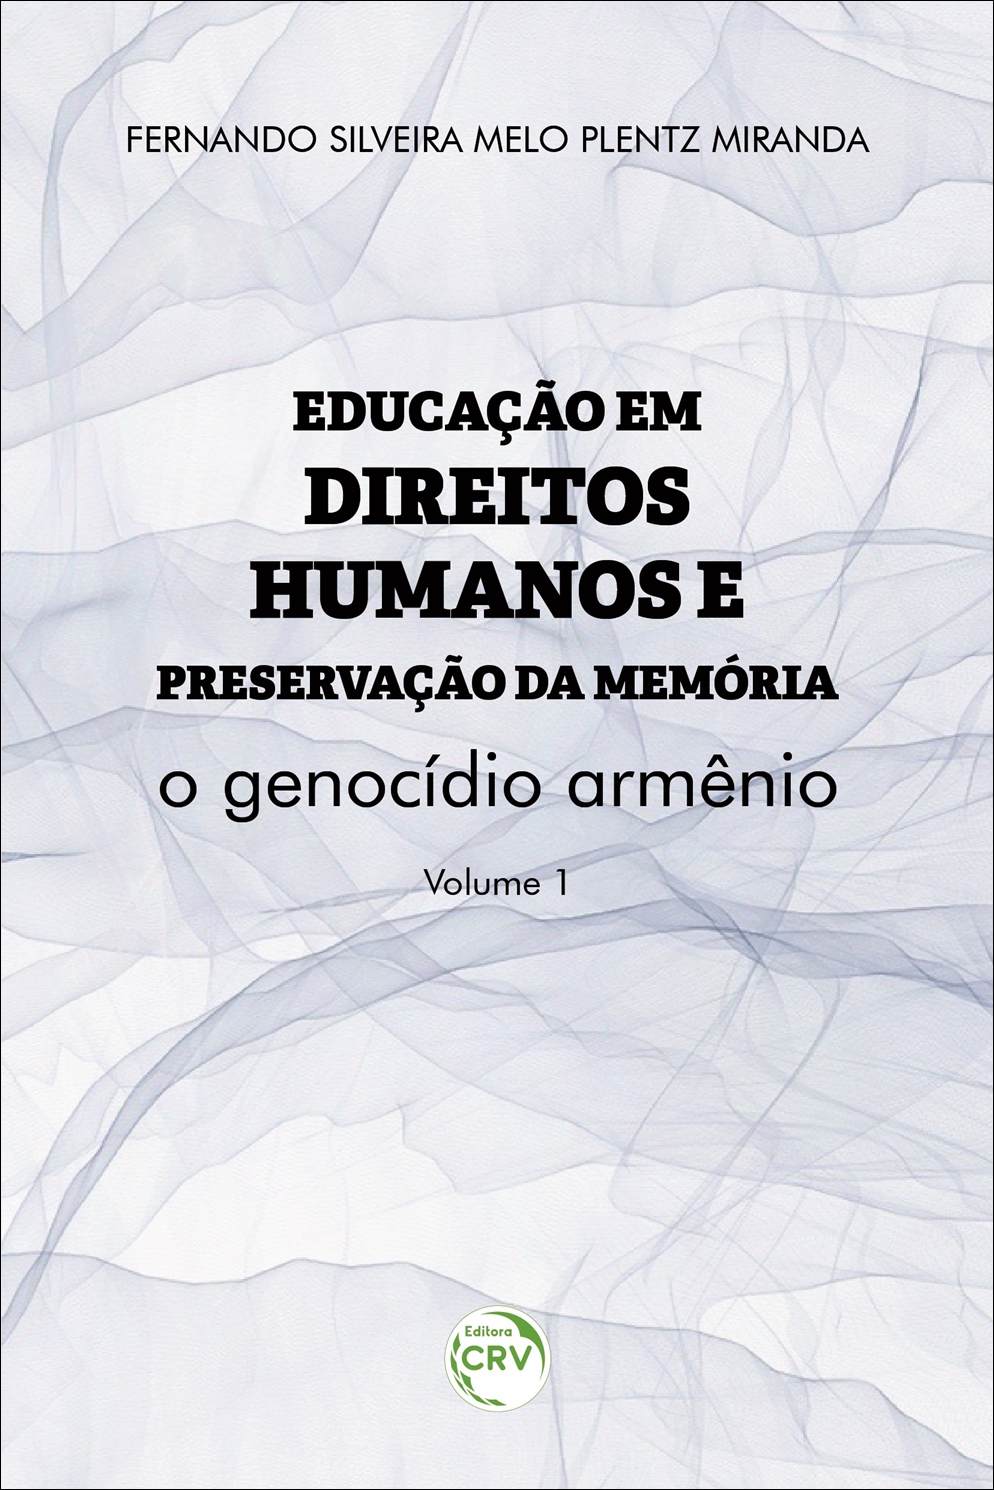 Capa do livro: EDUCAÇÃO EM DIREITOS HUMANOS E PRESERVAÇÃO DA MEMÓRIA: <br>o genocídio armênio <br>Coleção Educação em Direitos Humanos e Preservação da Memória <br>Volume 1